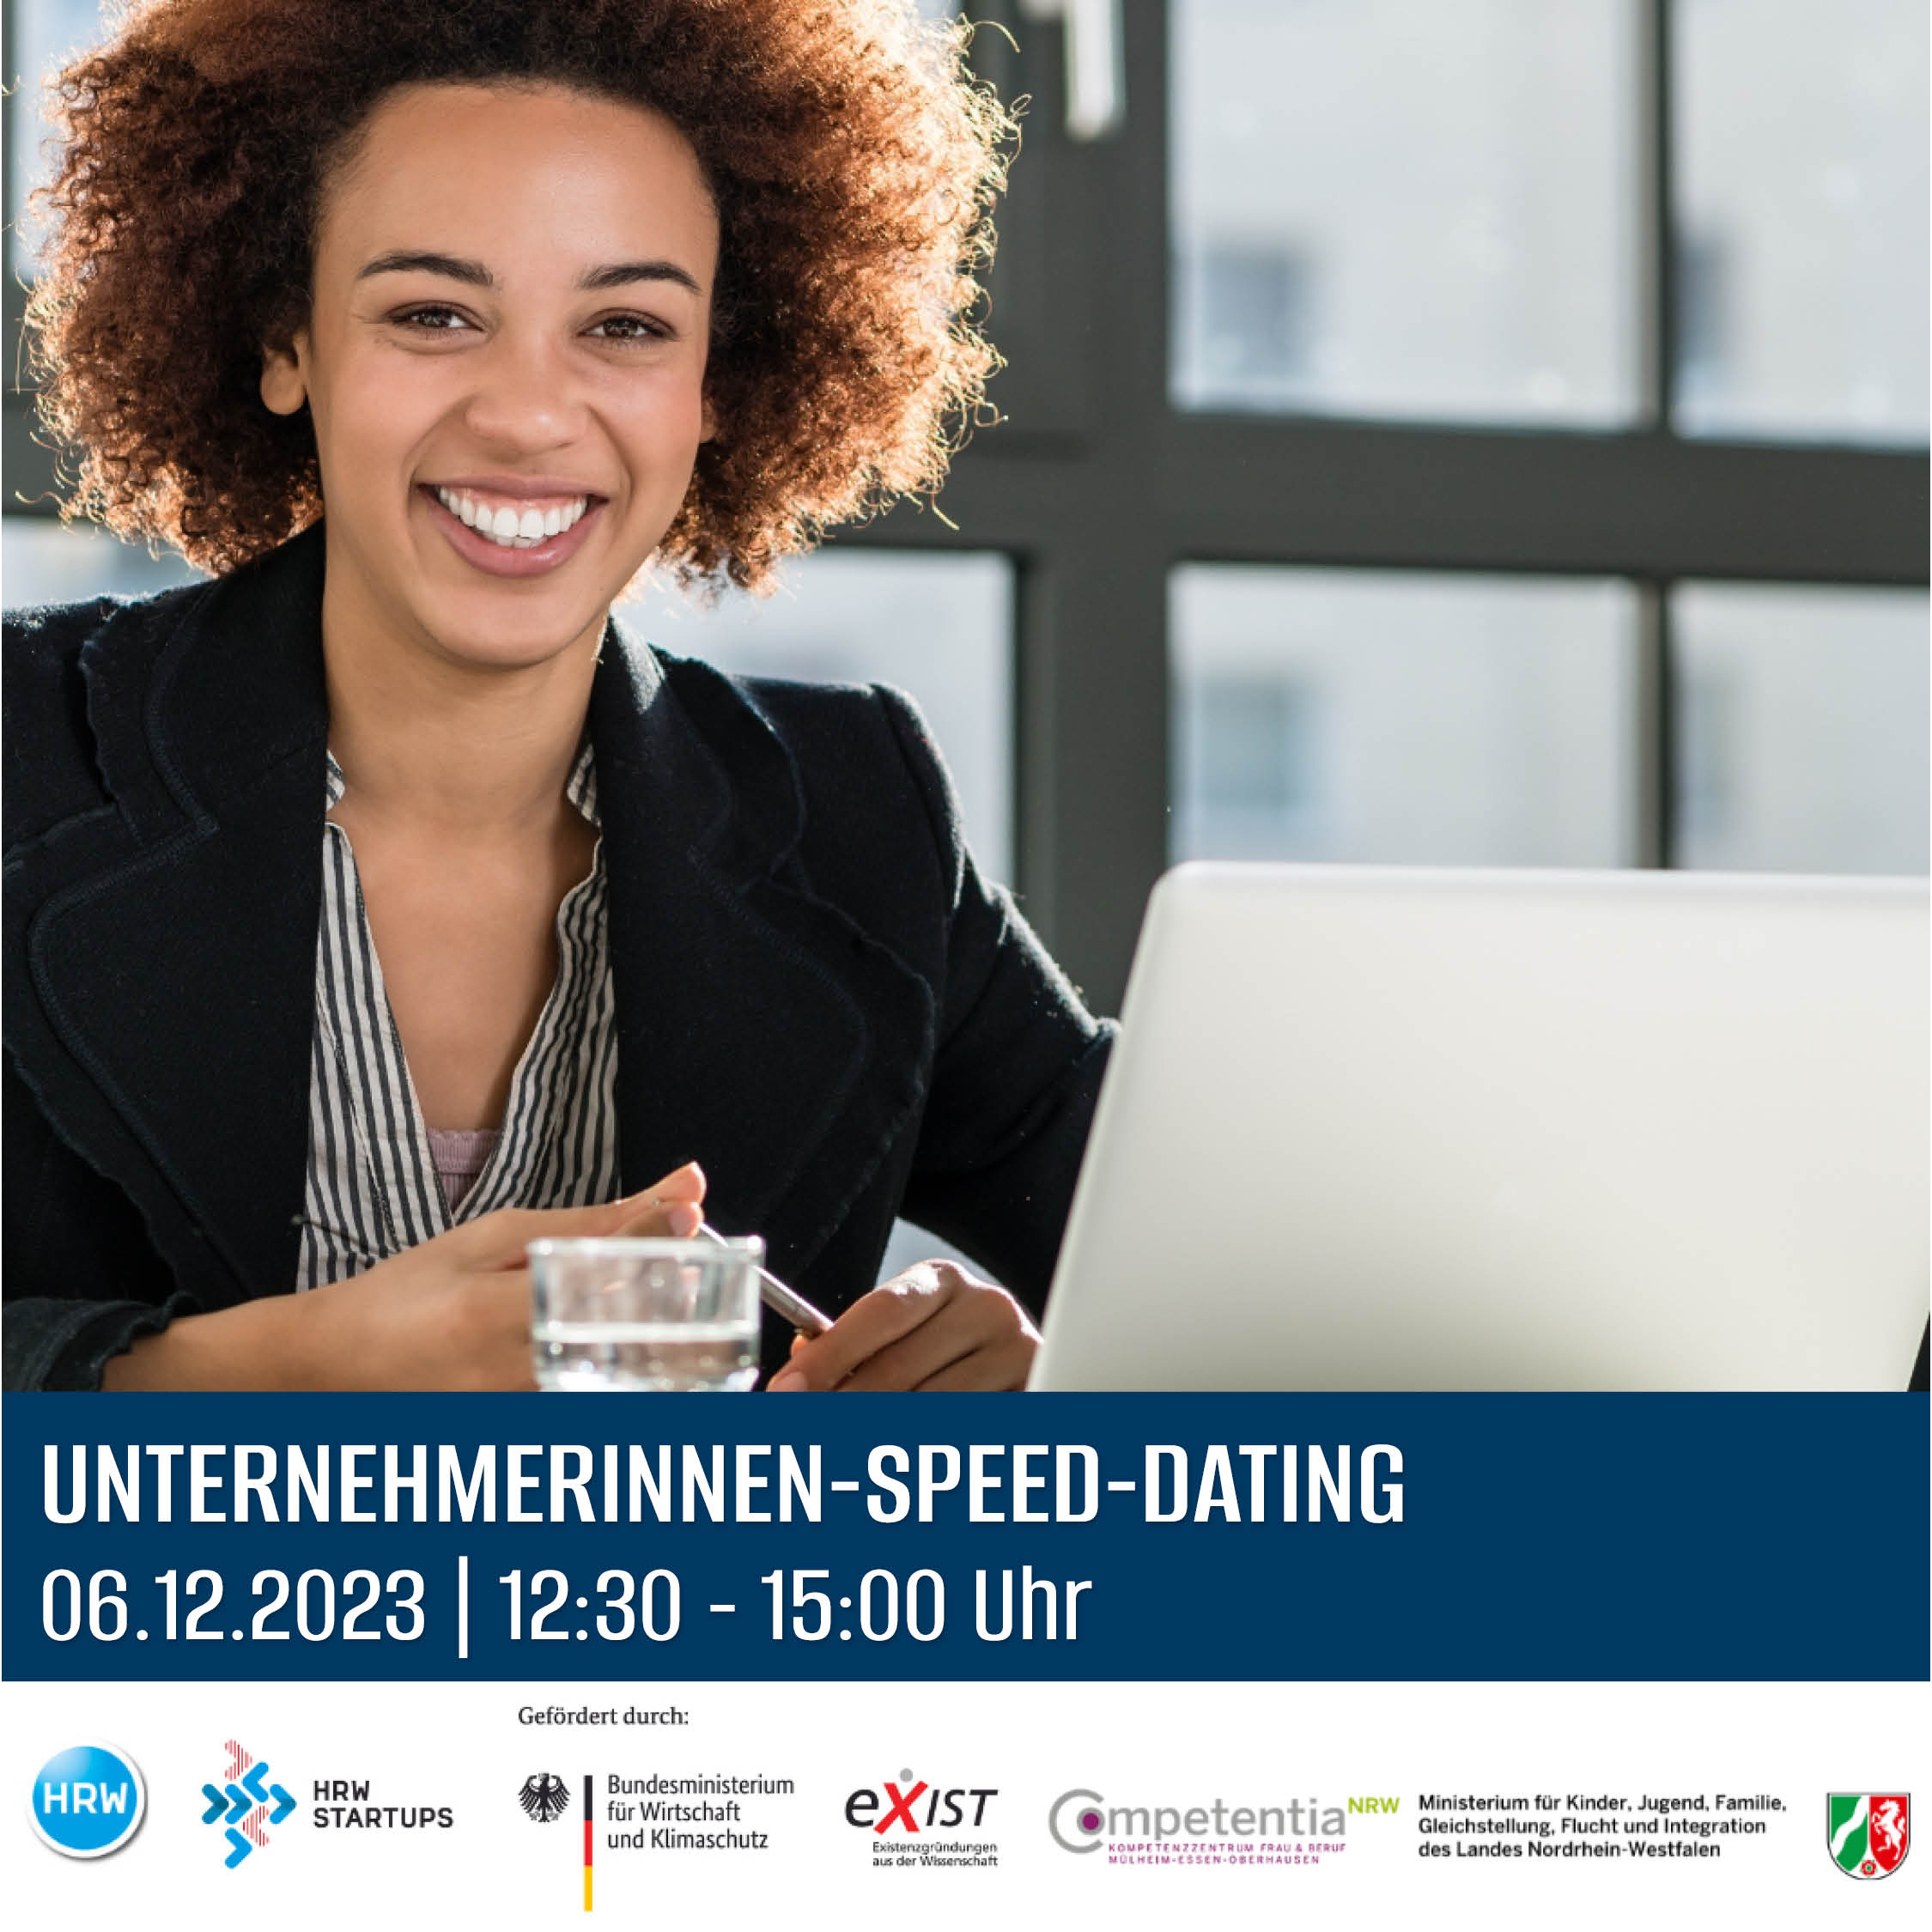 Unternehmerinnen-Speed-Dating: Viva la Networking!